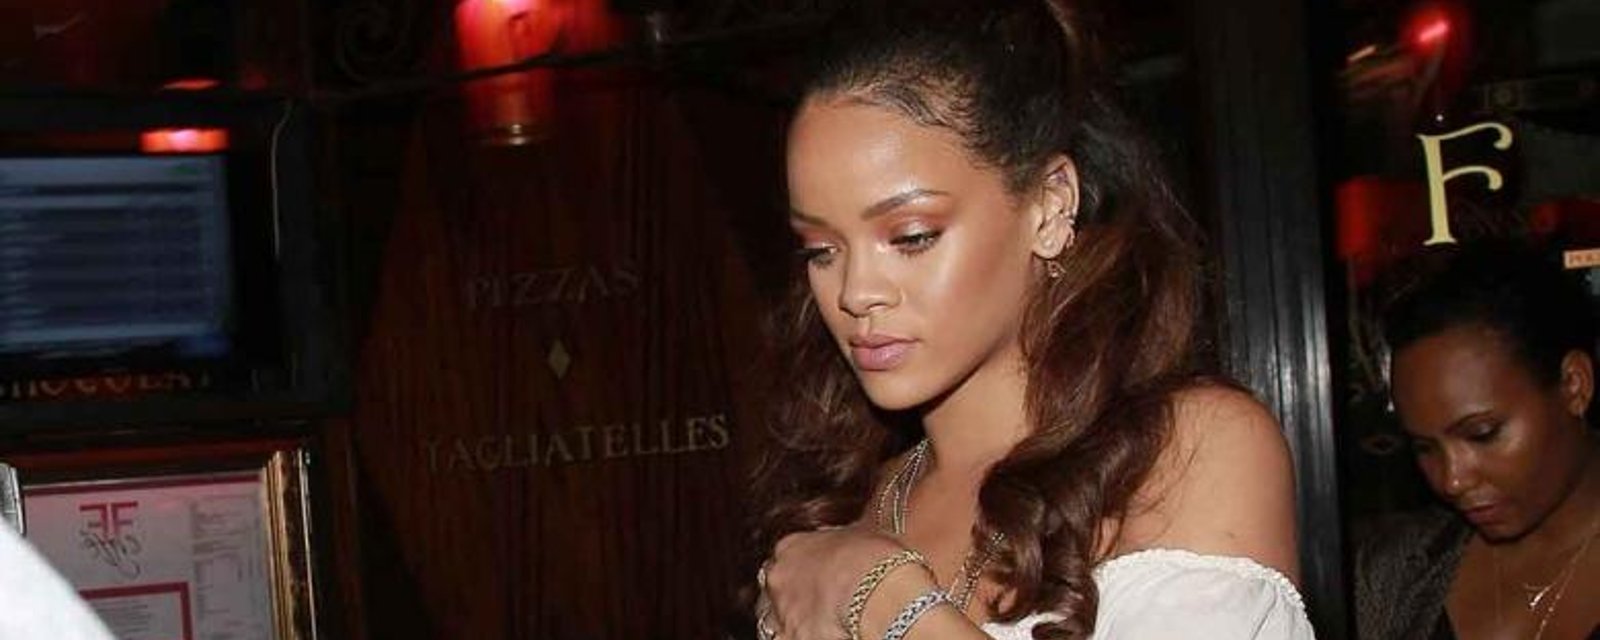 Des photos de Rihanna, toute nue, enflamment le web!